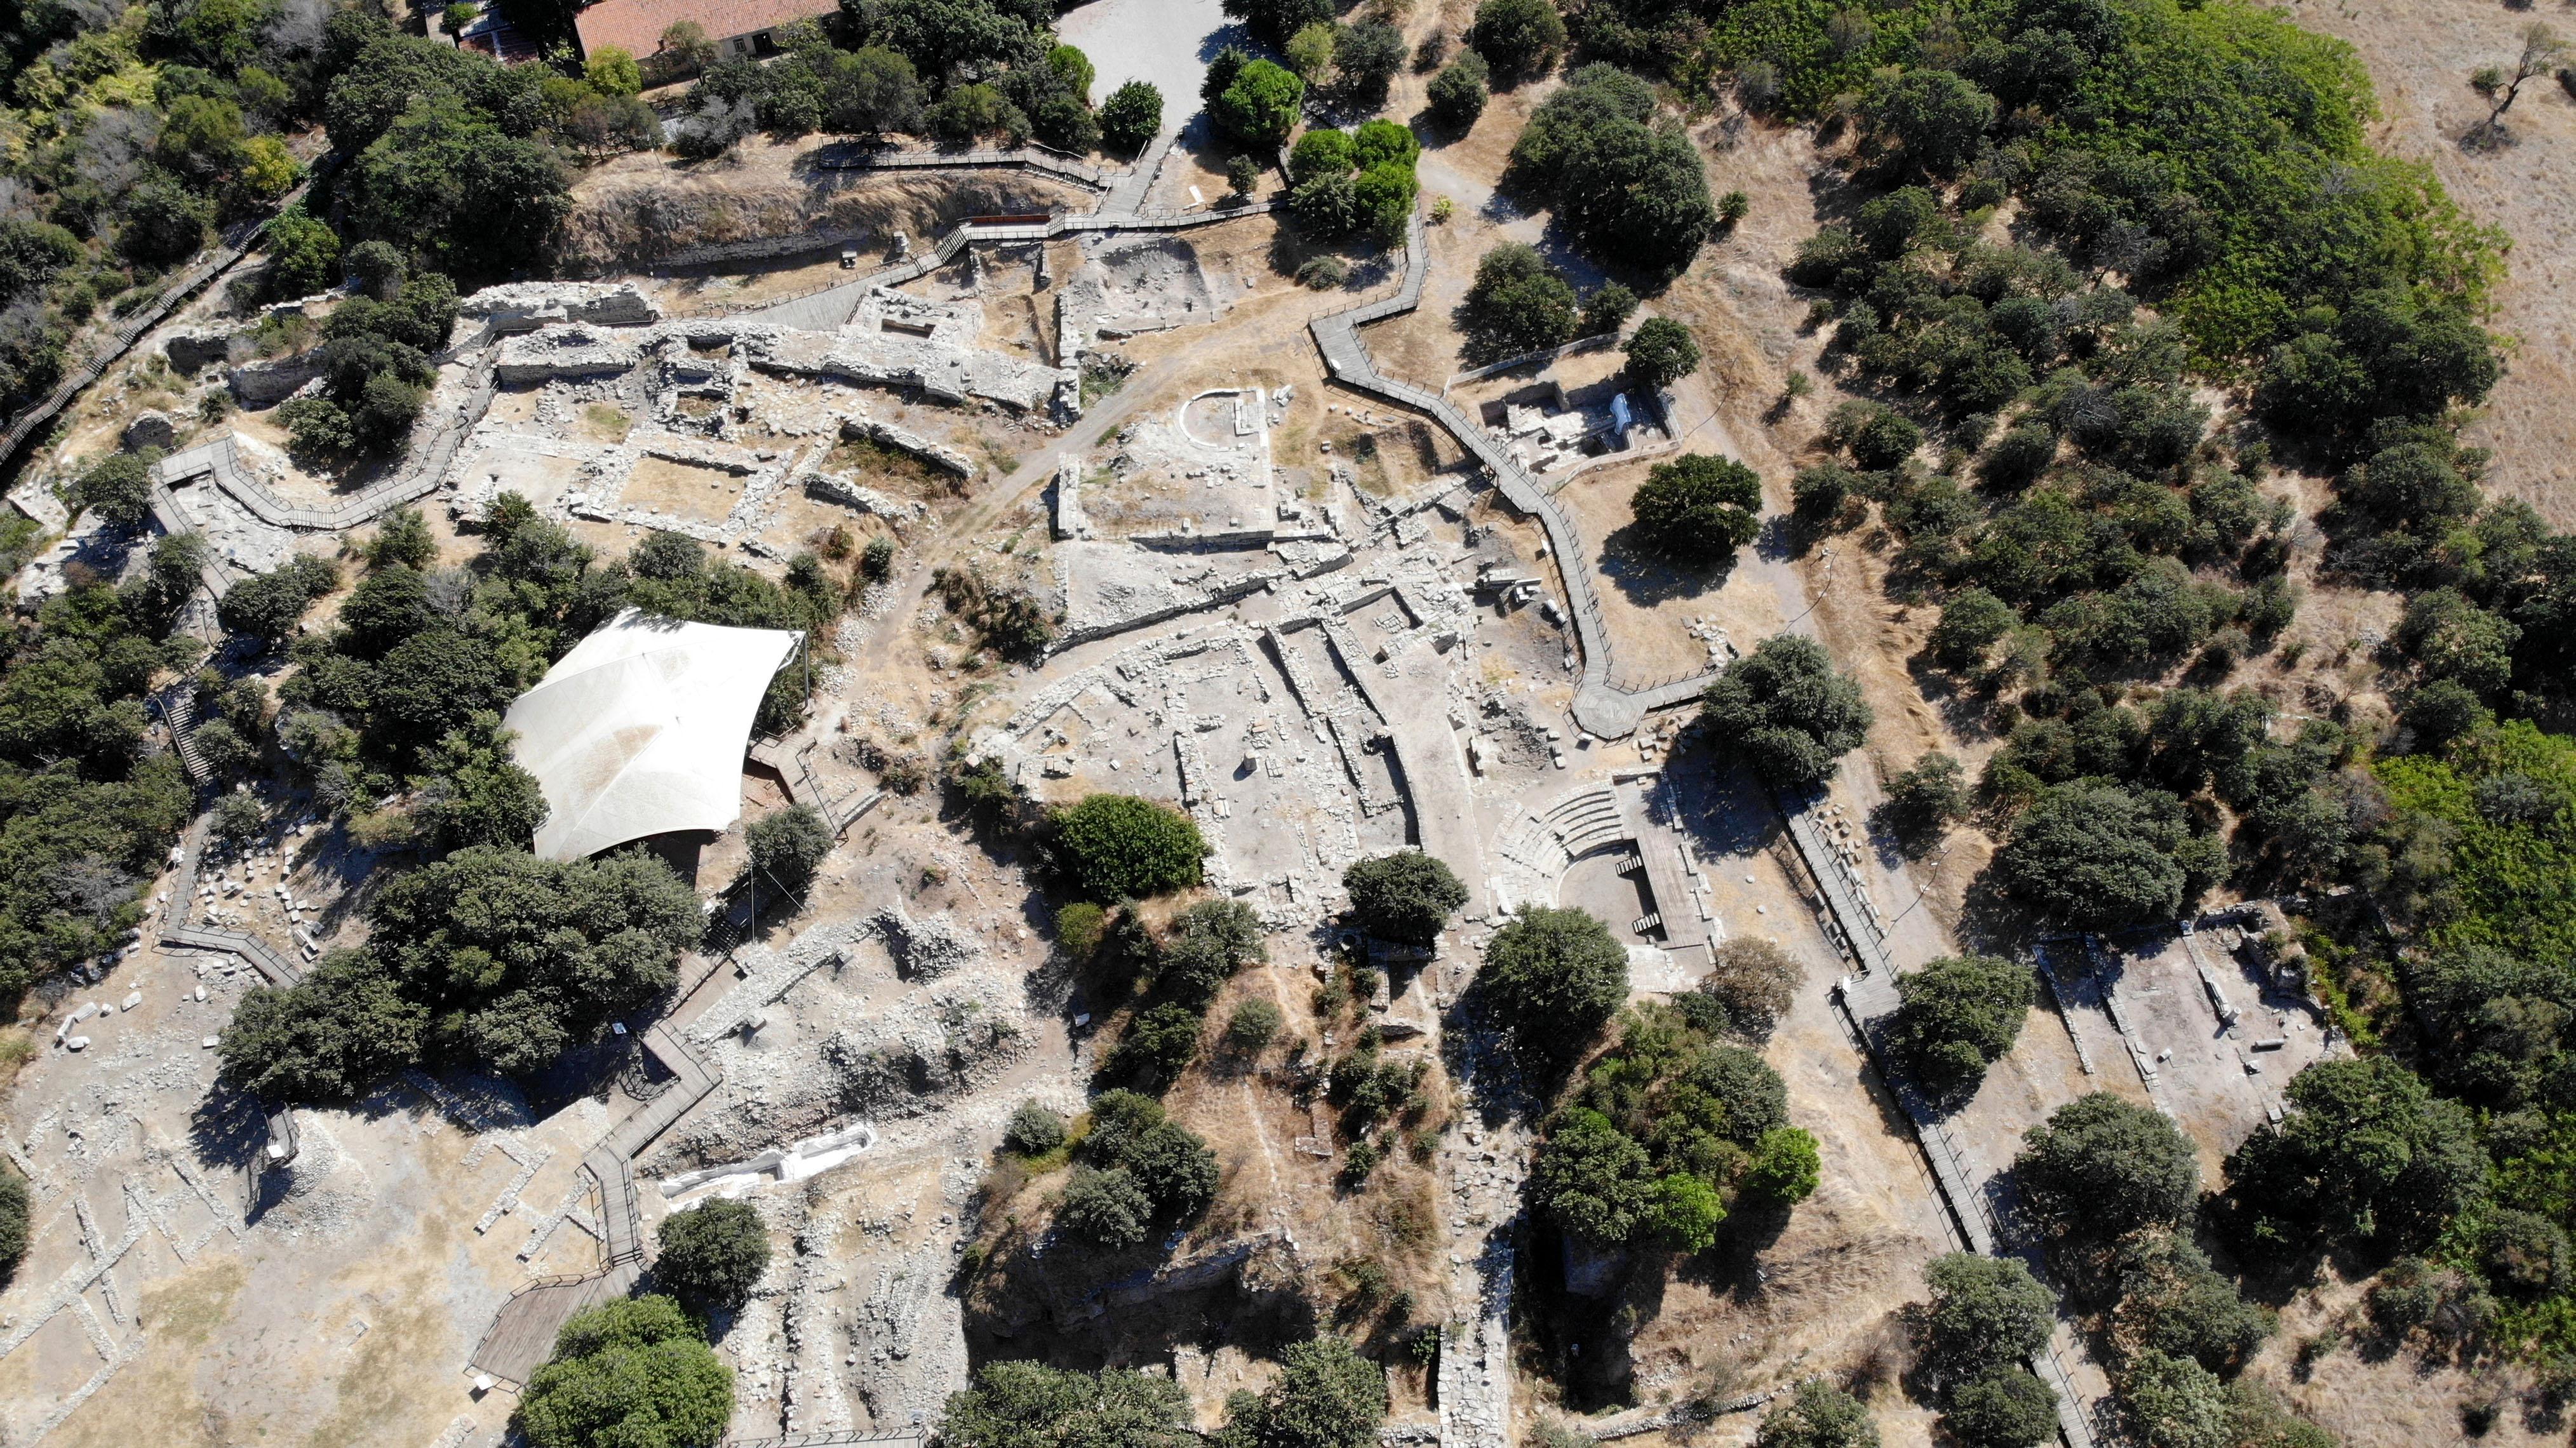 Troya Hazineleri, Hisarlık Tepenin 3 bin kuruşa kamulaştırılmasıyla kurtulmuş